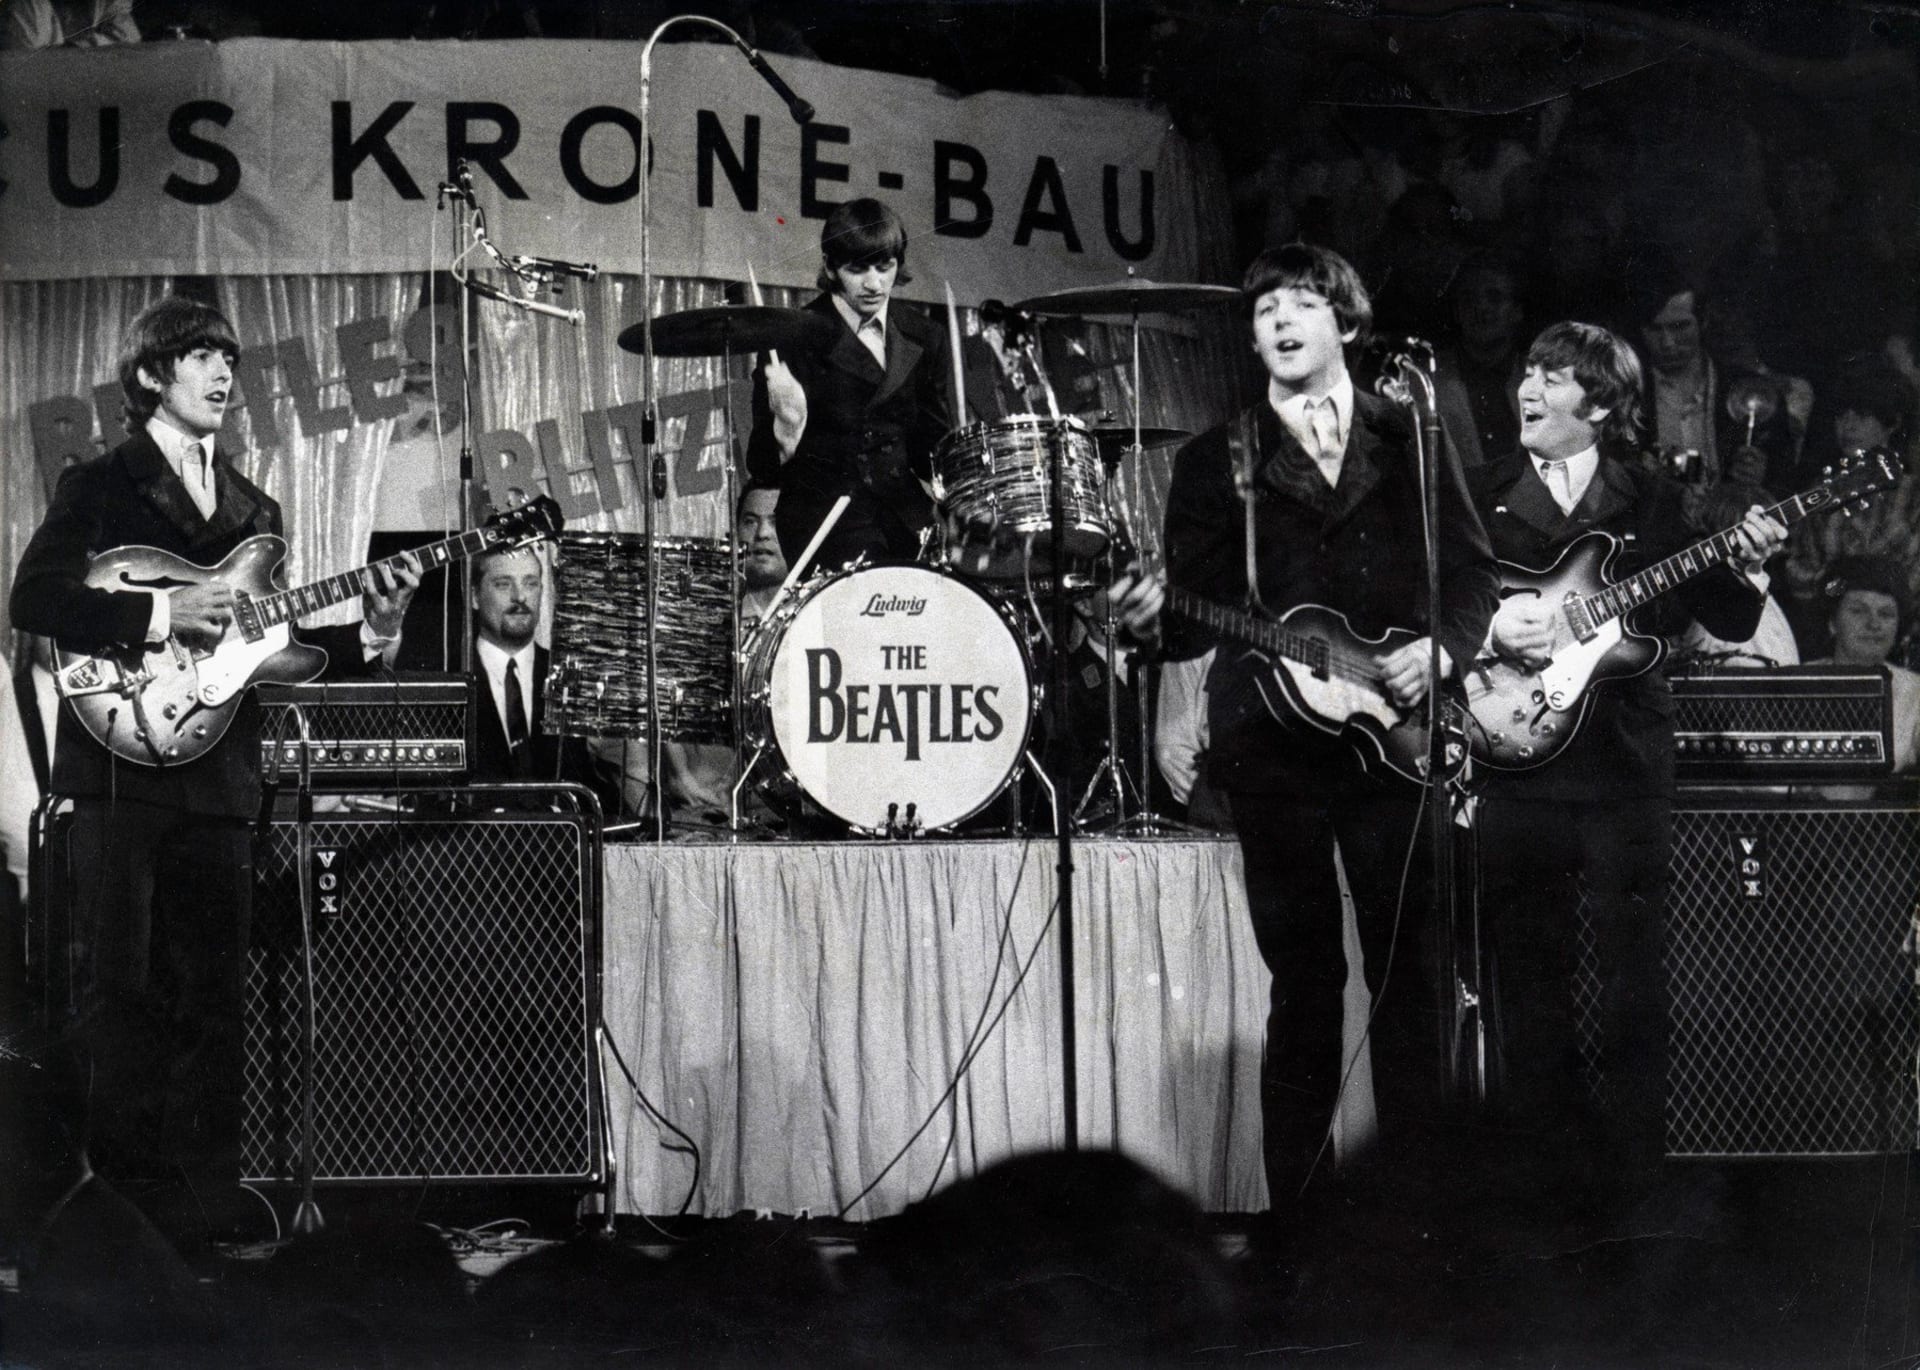 V mnichovském Circus-Krone-Bau odehráli The Beatles jeden ze svých nejlepších koncertů. Poprvé tu naživo zazněla legendární skladba Yesterday.